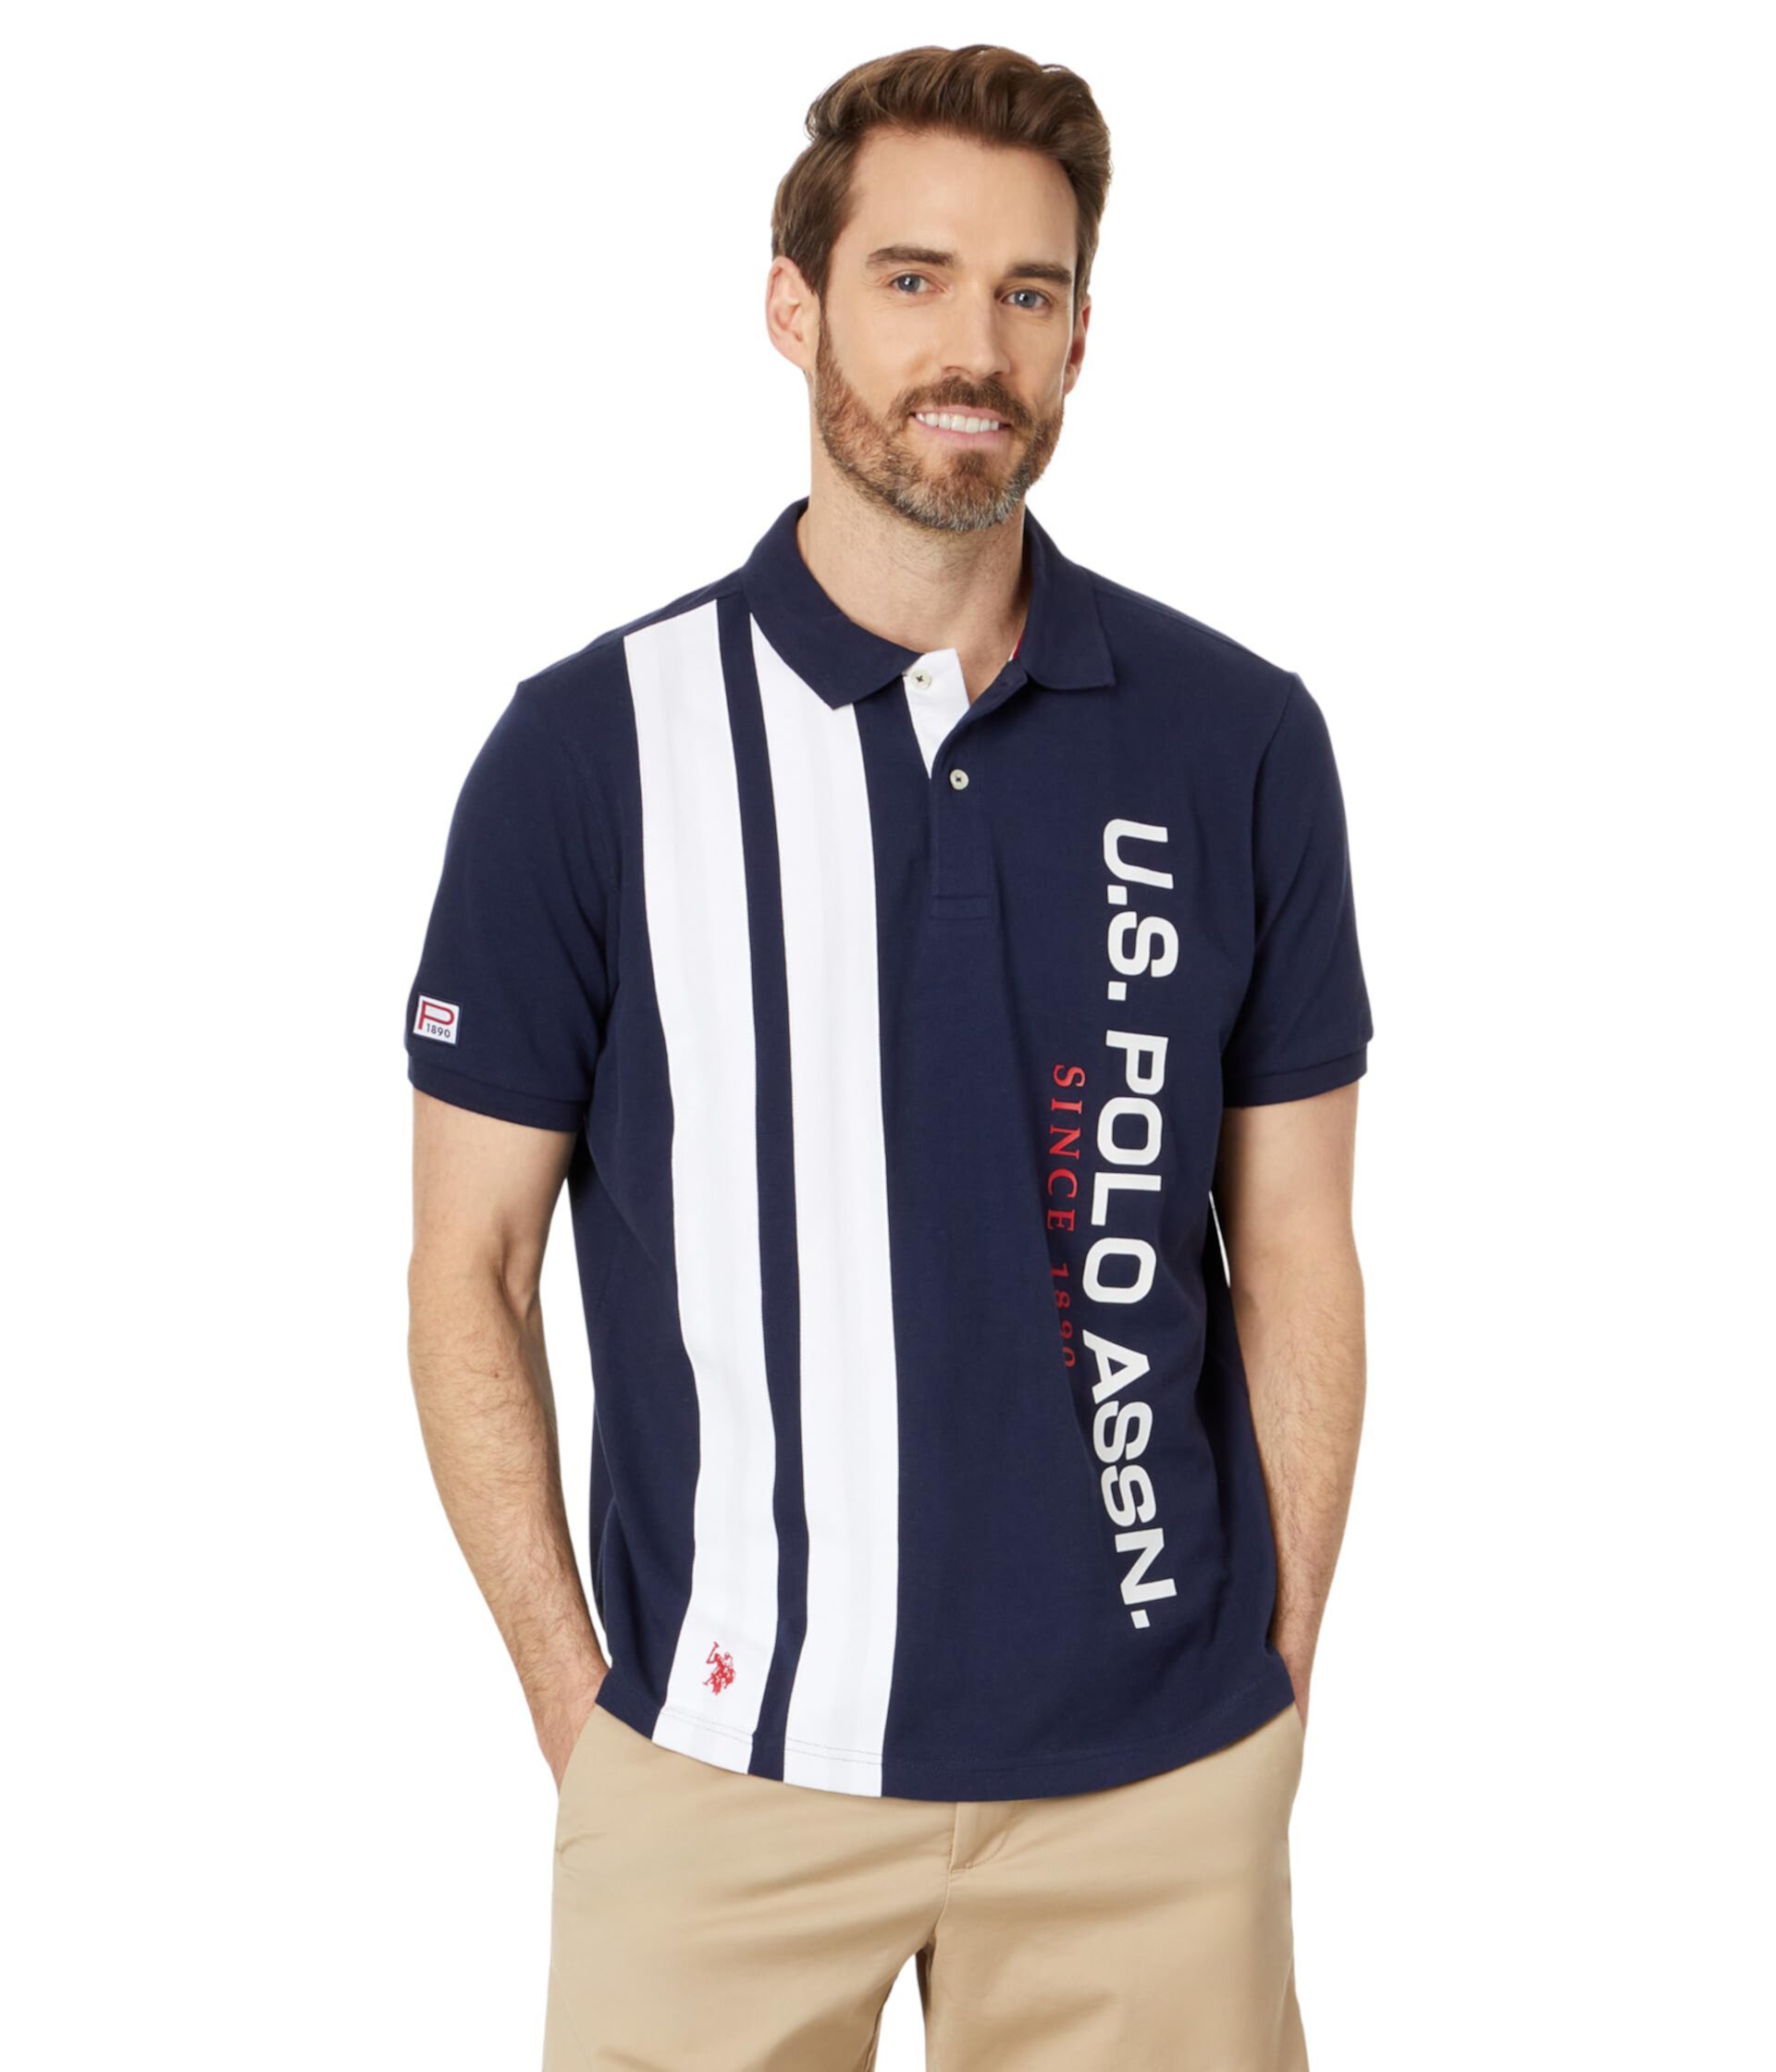 Мужская рубашка-поло с коротким рукавом и вертикальным принтом U.S. POLO ASSN. U.S. POLO ASSN.